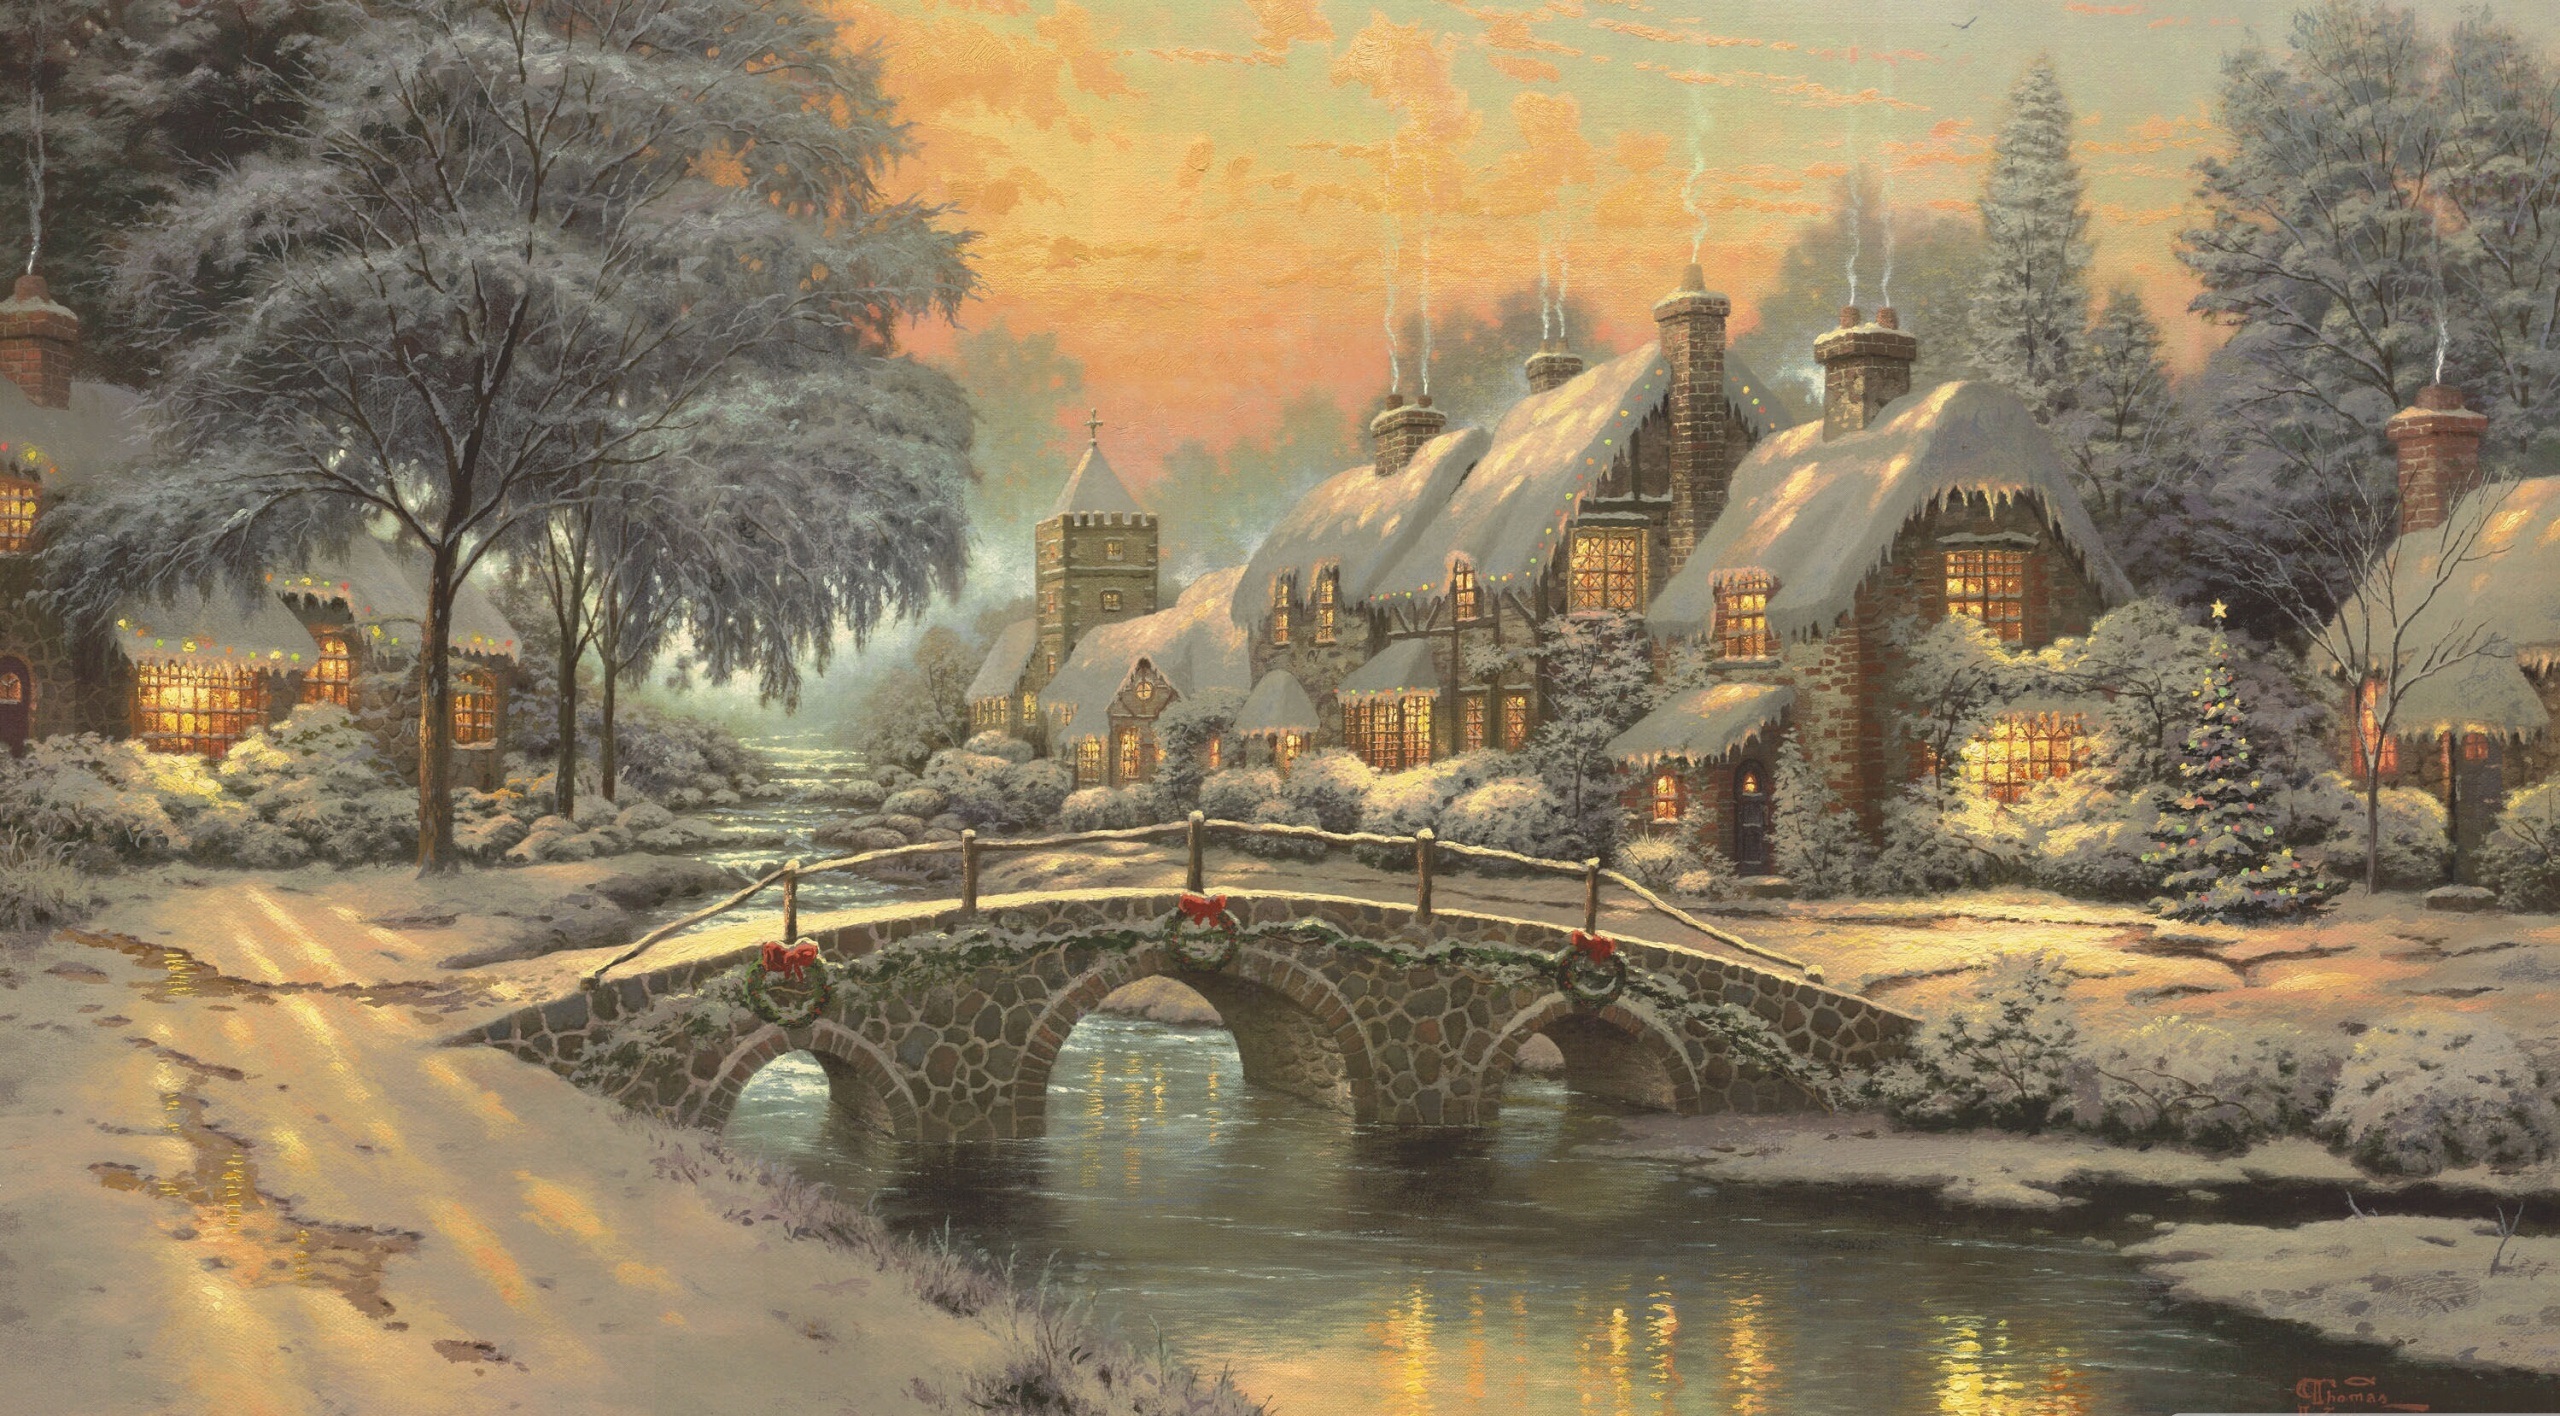 Classic Christmas Painting by Thomas Kinkade